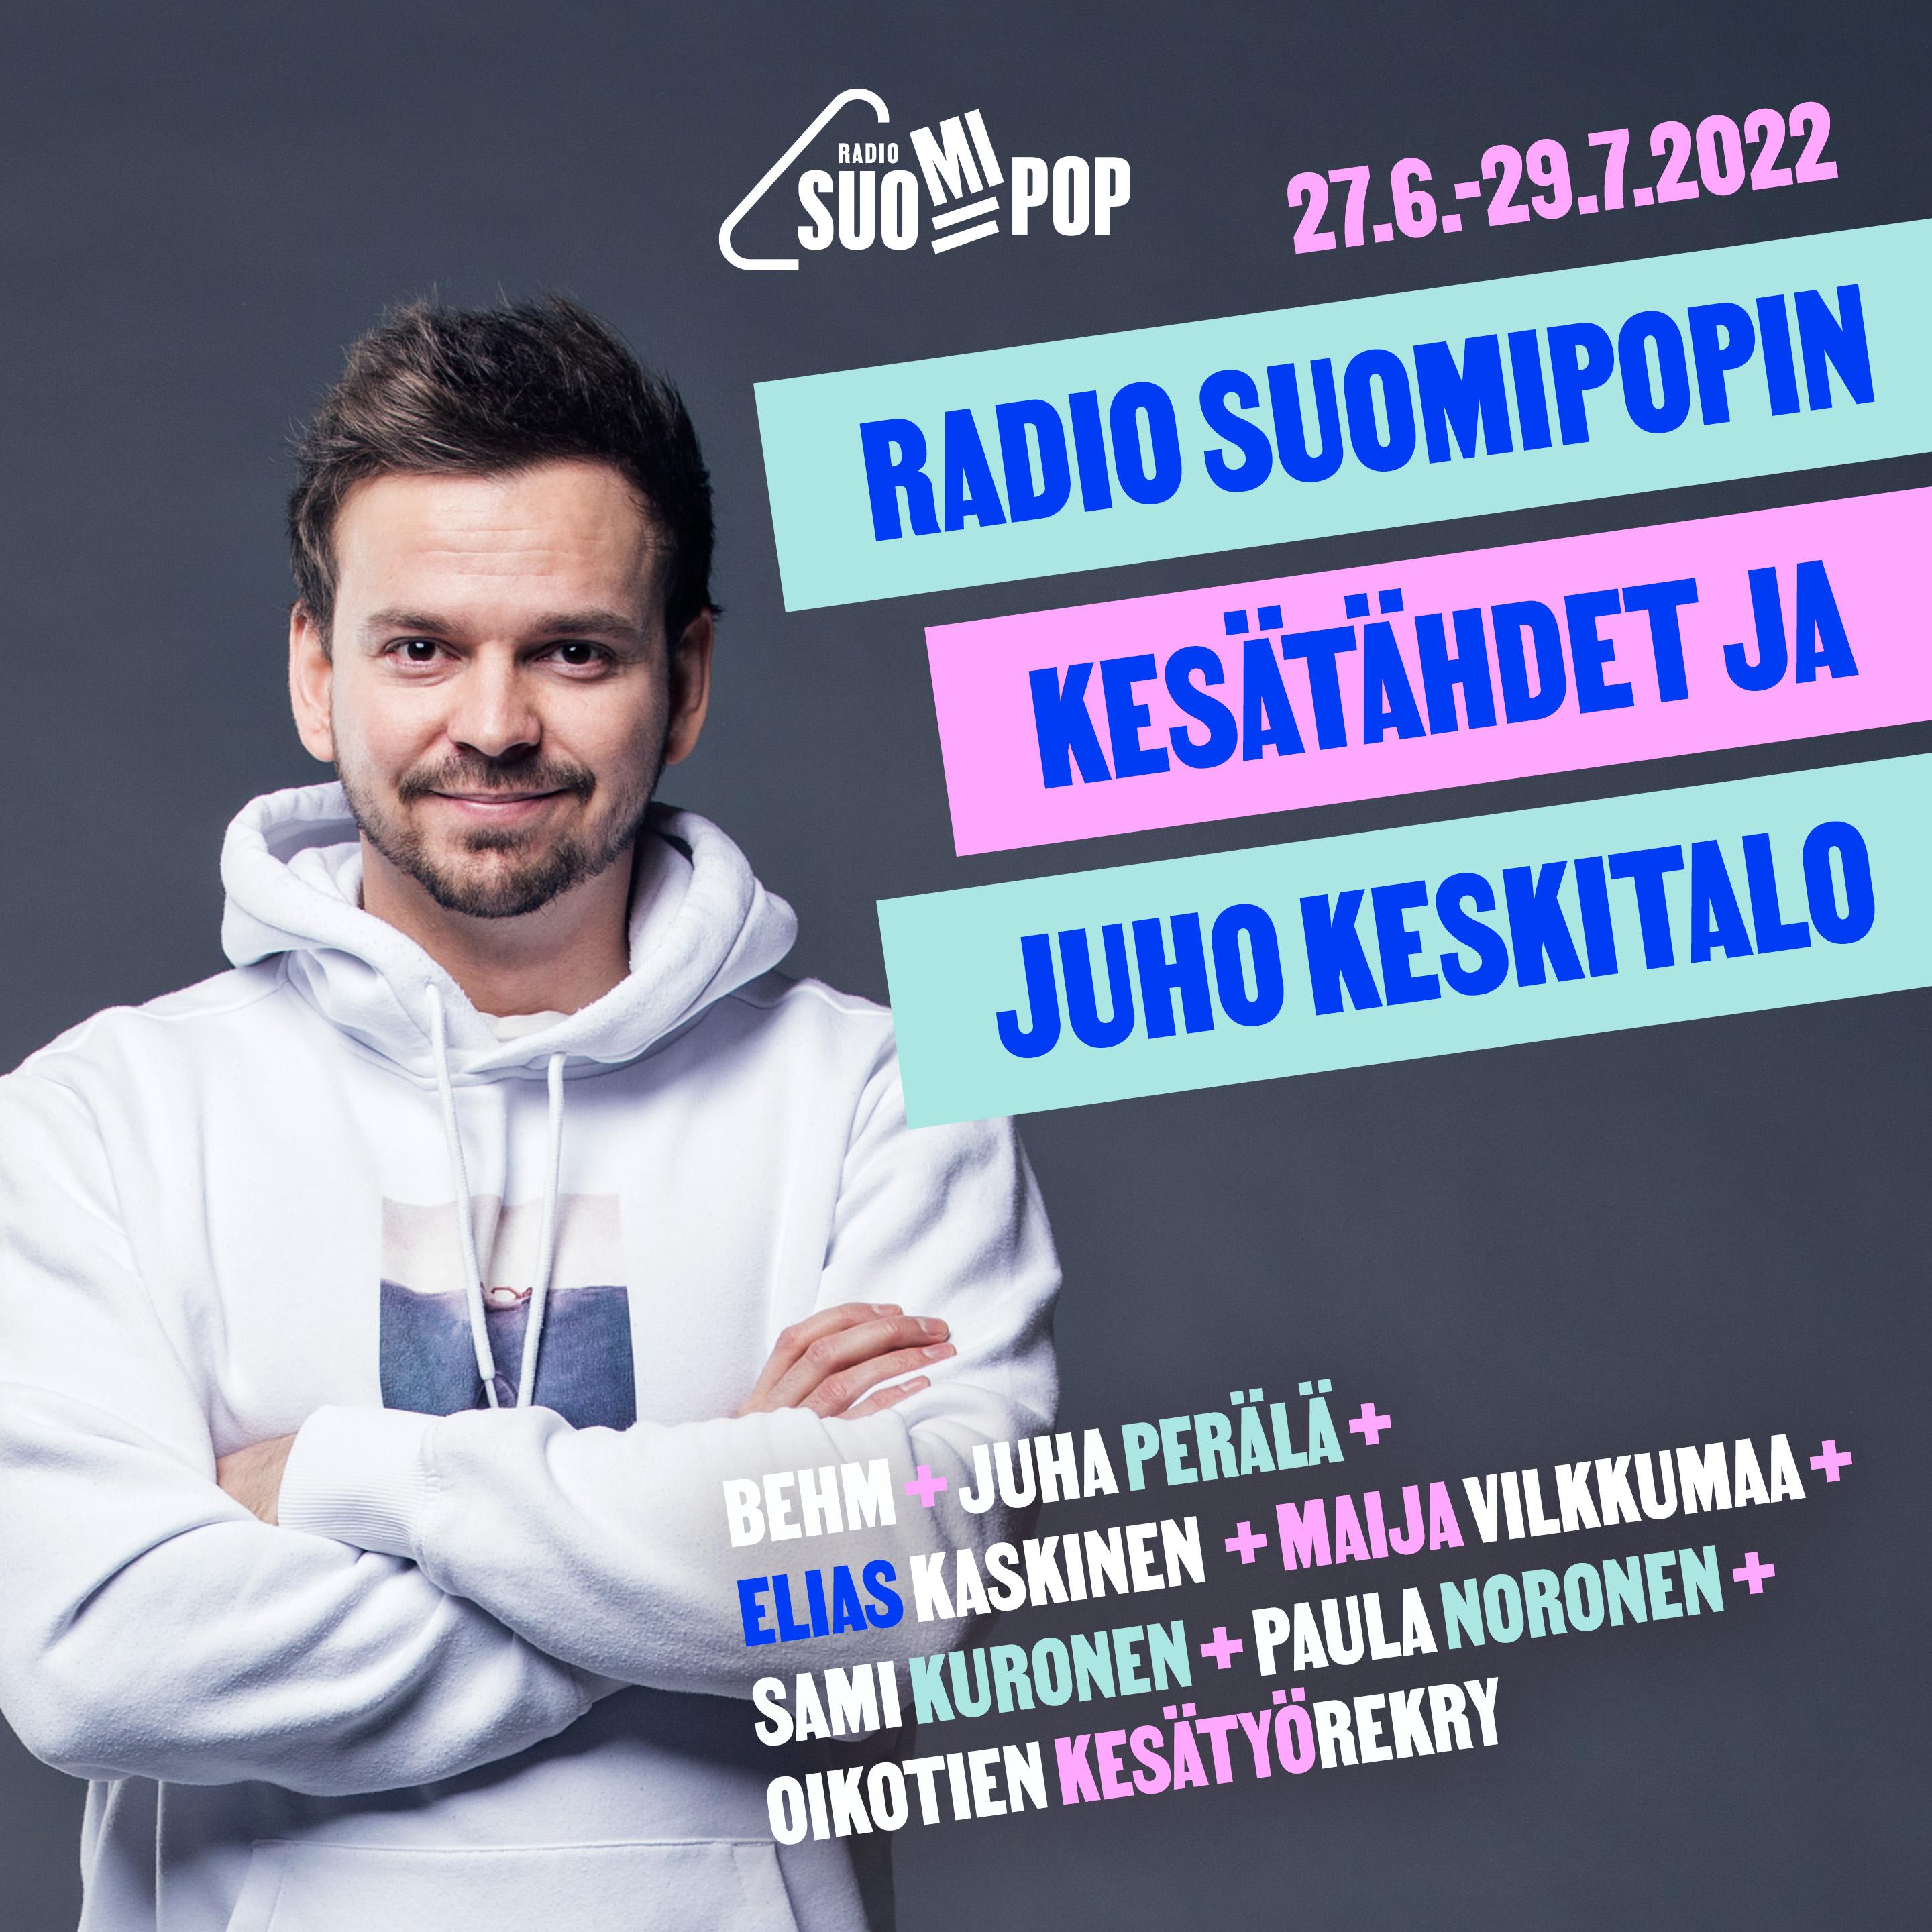 Radio Suomipopin Kesätähdet ja Juho Keskitalo - podcast